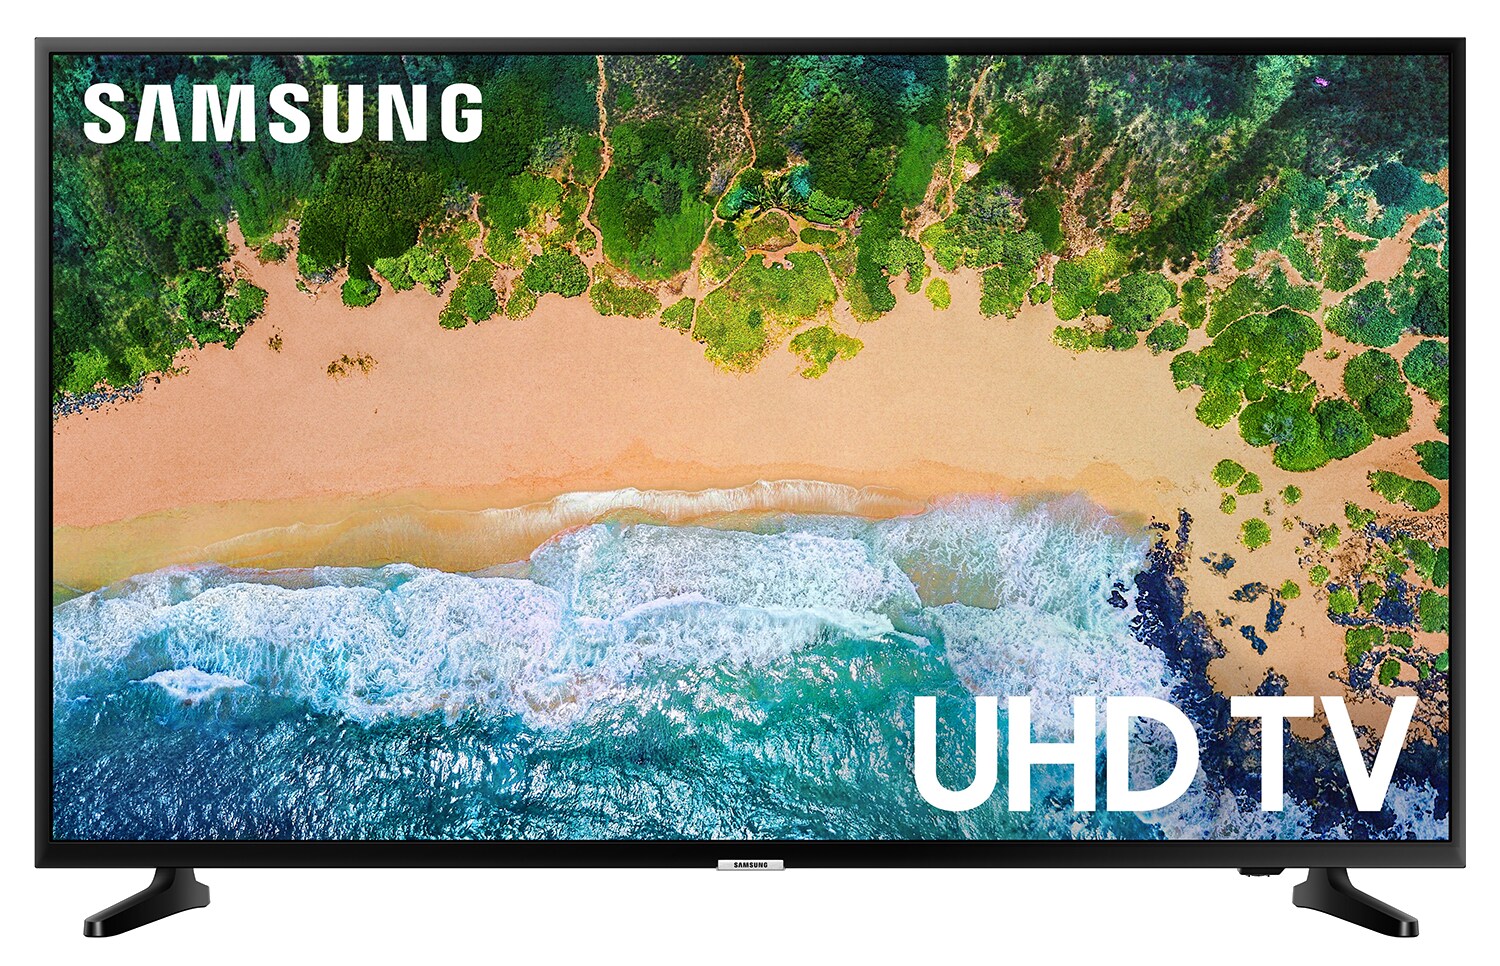 Samsung UN55NU6900B 6 Series - 55" Class (54.6" viewable) LED TV